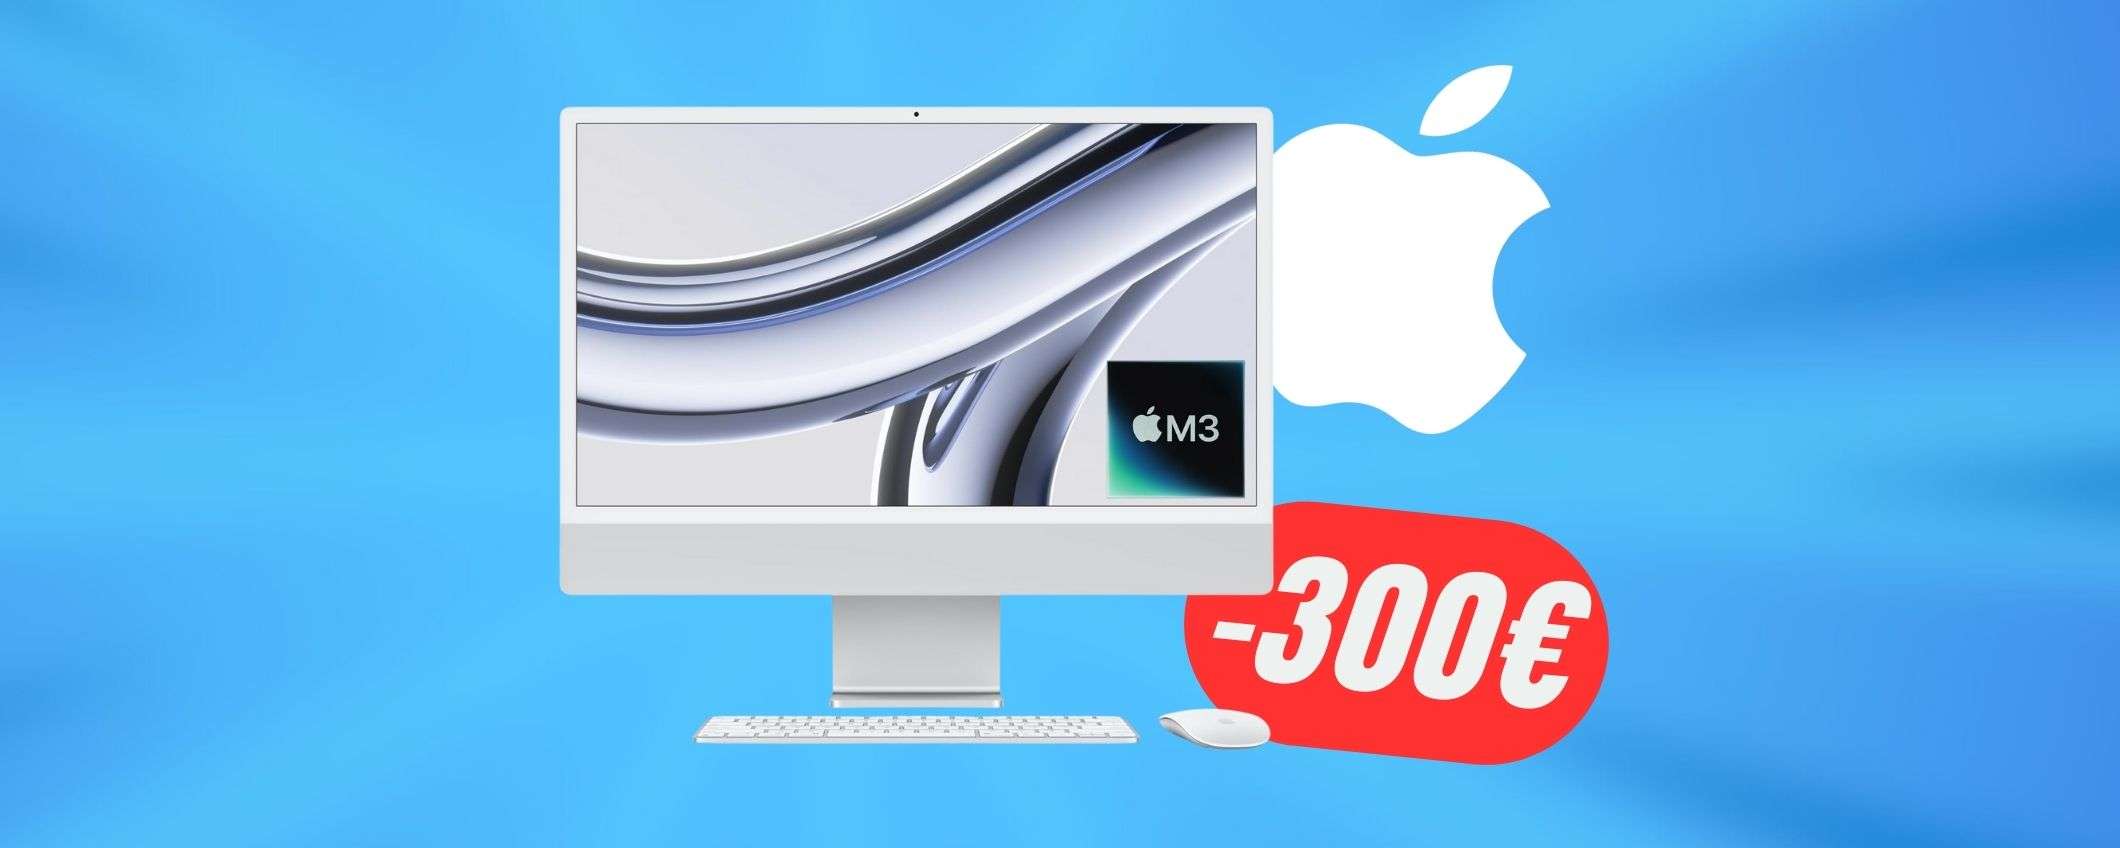 Il prezzo dell'iMac di Apple con chip M3 crolla di -330€!